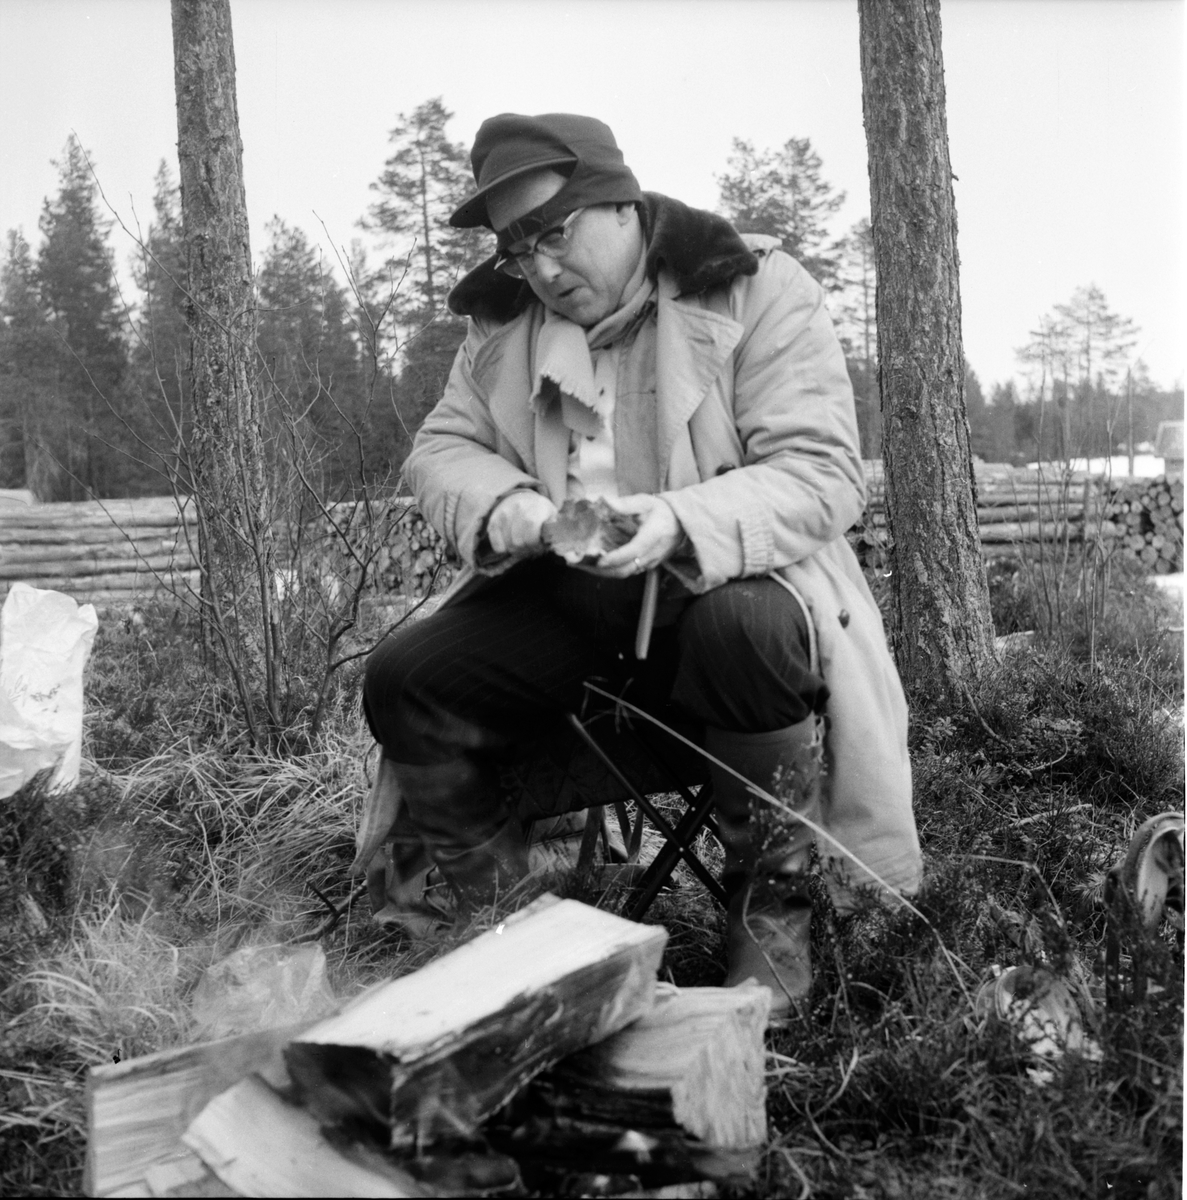 Hälsen,
Fiske på is,
S. Weit, Johan Svärd, P.W. Häger,
28 Mars 1961